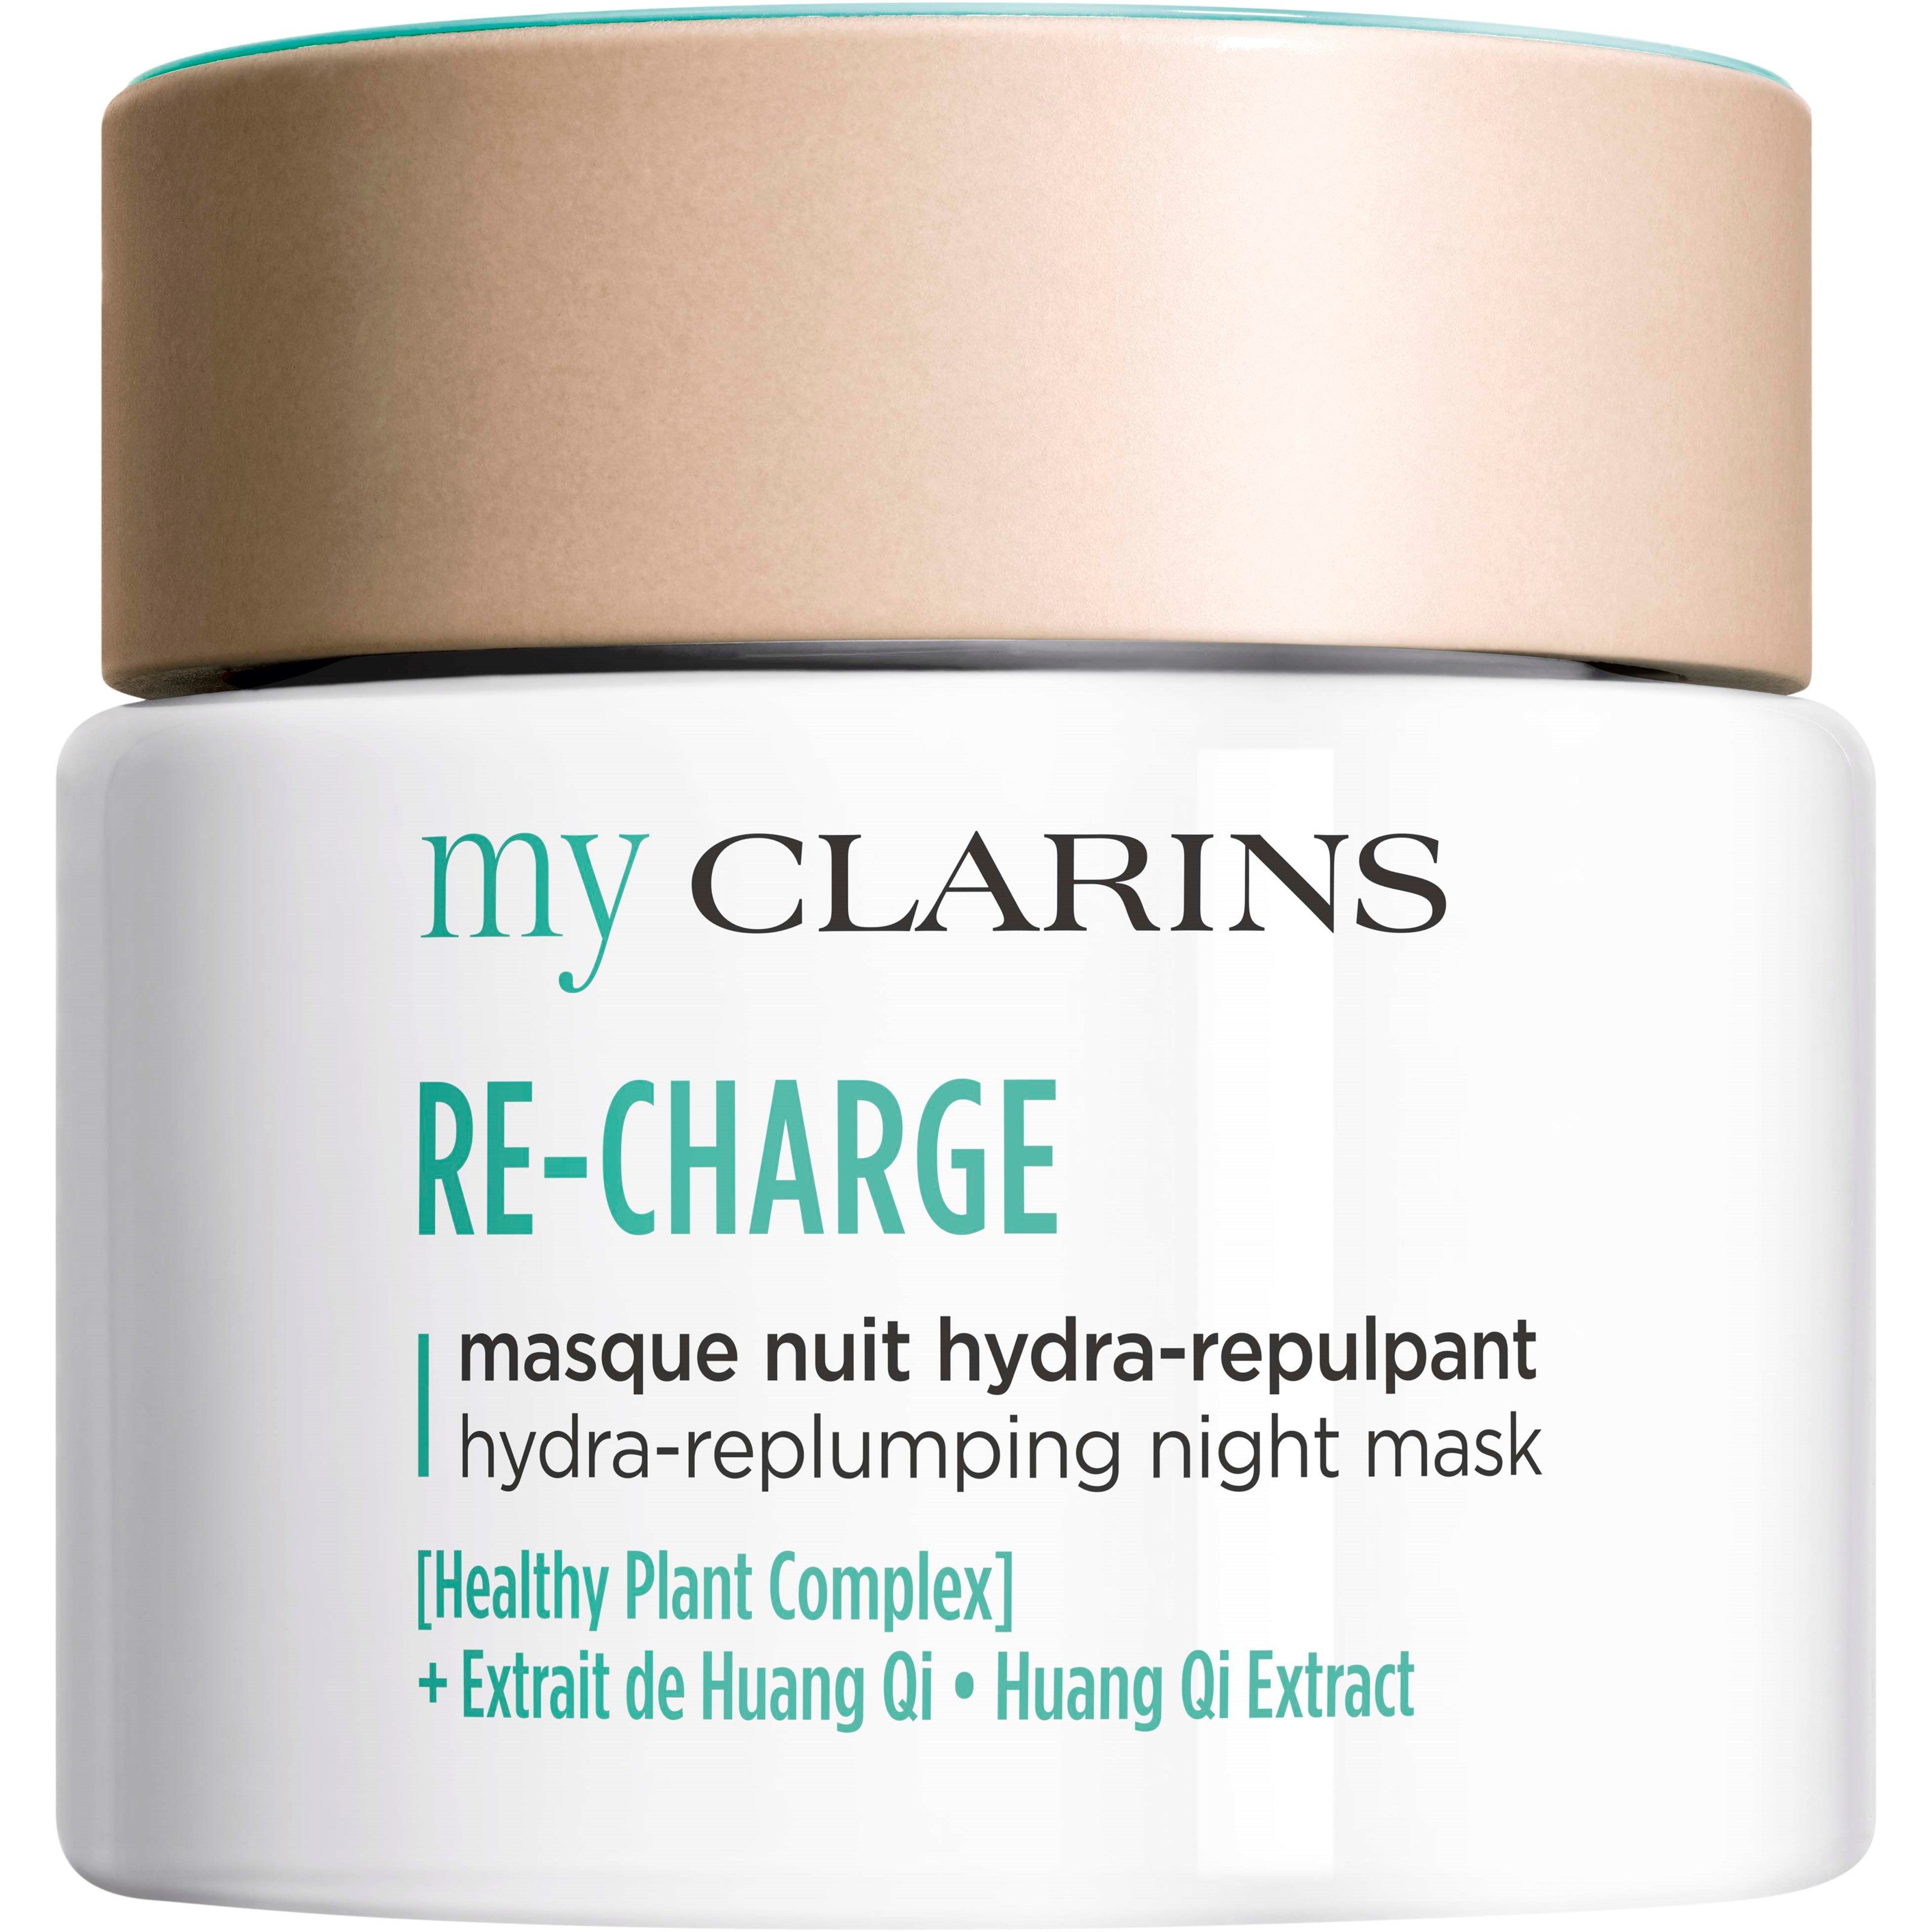 Bilde av Clarins My Clarins Re-charge Hydra-replumping Night Mask 50 Ml